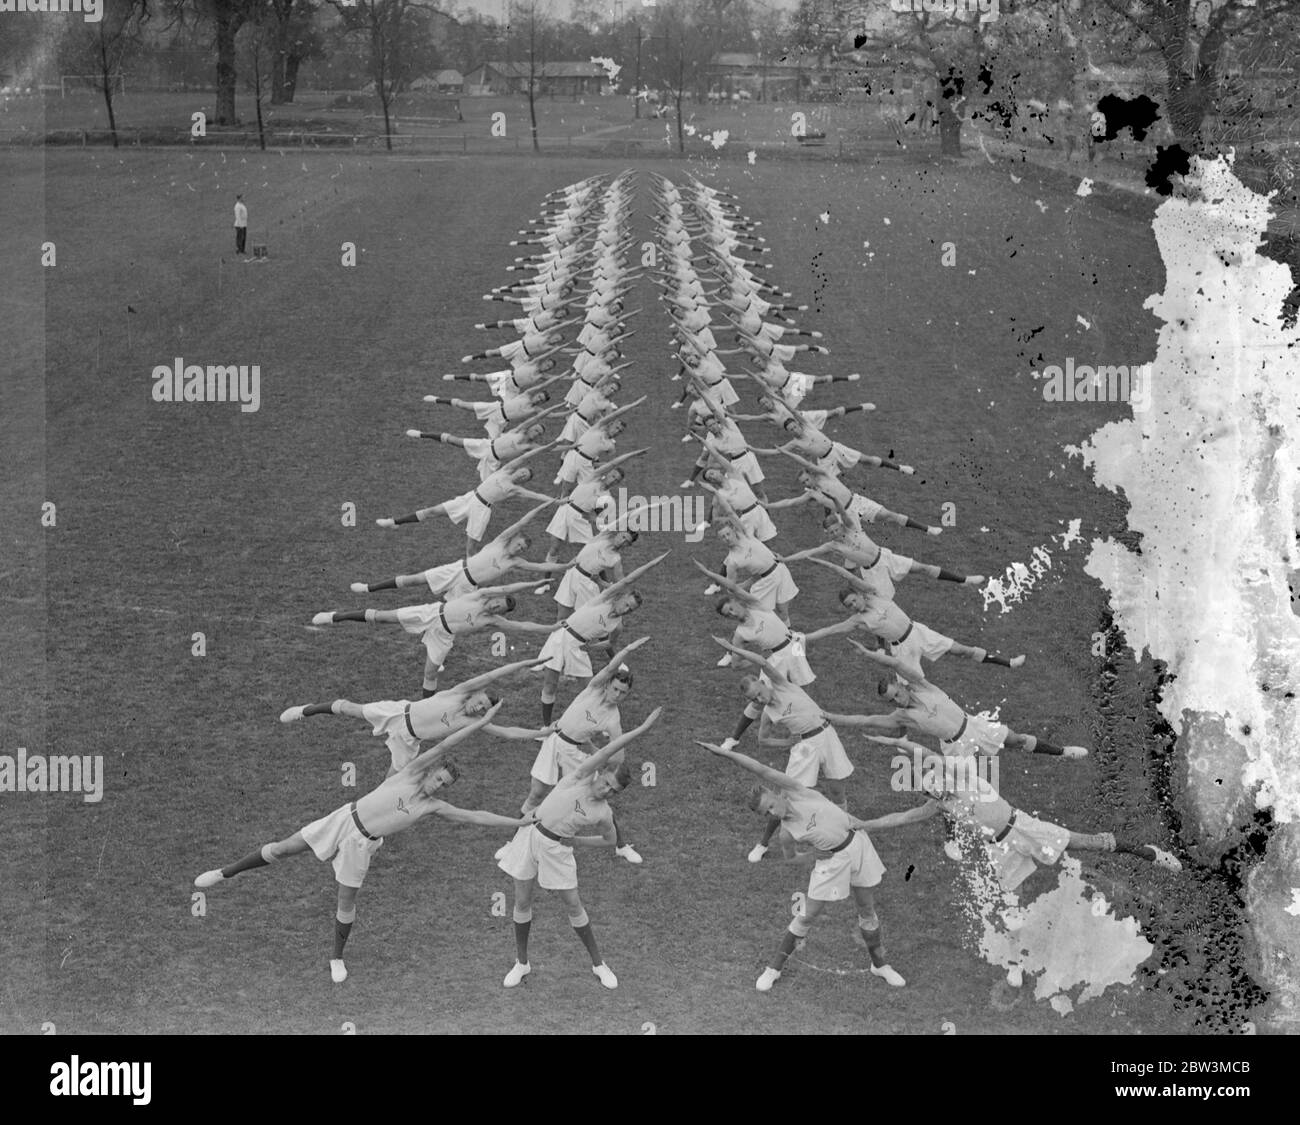 Les hommes de la RAF répètent des maillots physiques pour le tournoi Royal . La partie d'entraînement physique que la Royal Air Force contribue au tournoi Royal à Olympia a répété ses ' coups physiques ' au dépôt de la Royal Air Force, Uxbridge . Photos , un mouvement concerté . 30 avril 1936 Banque D'Images